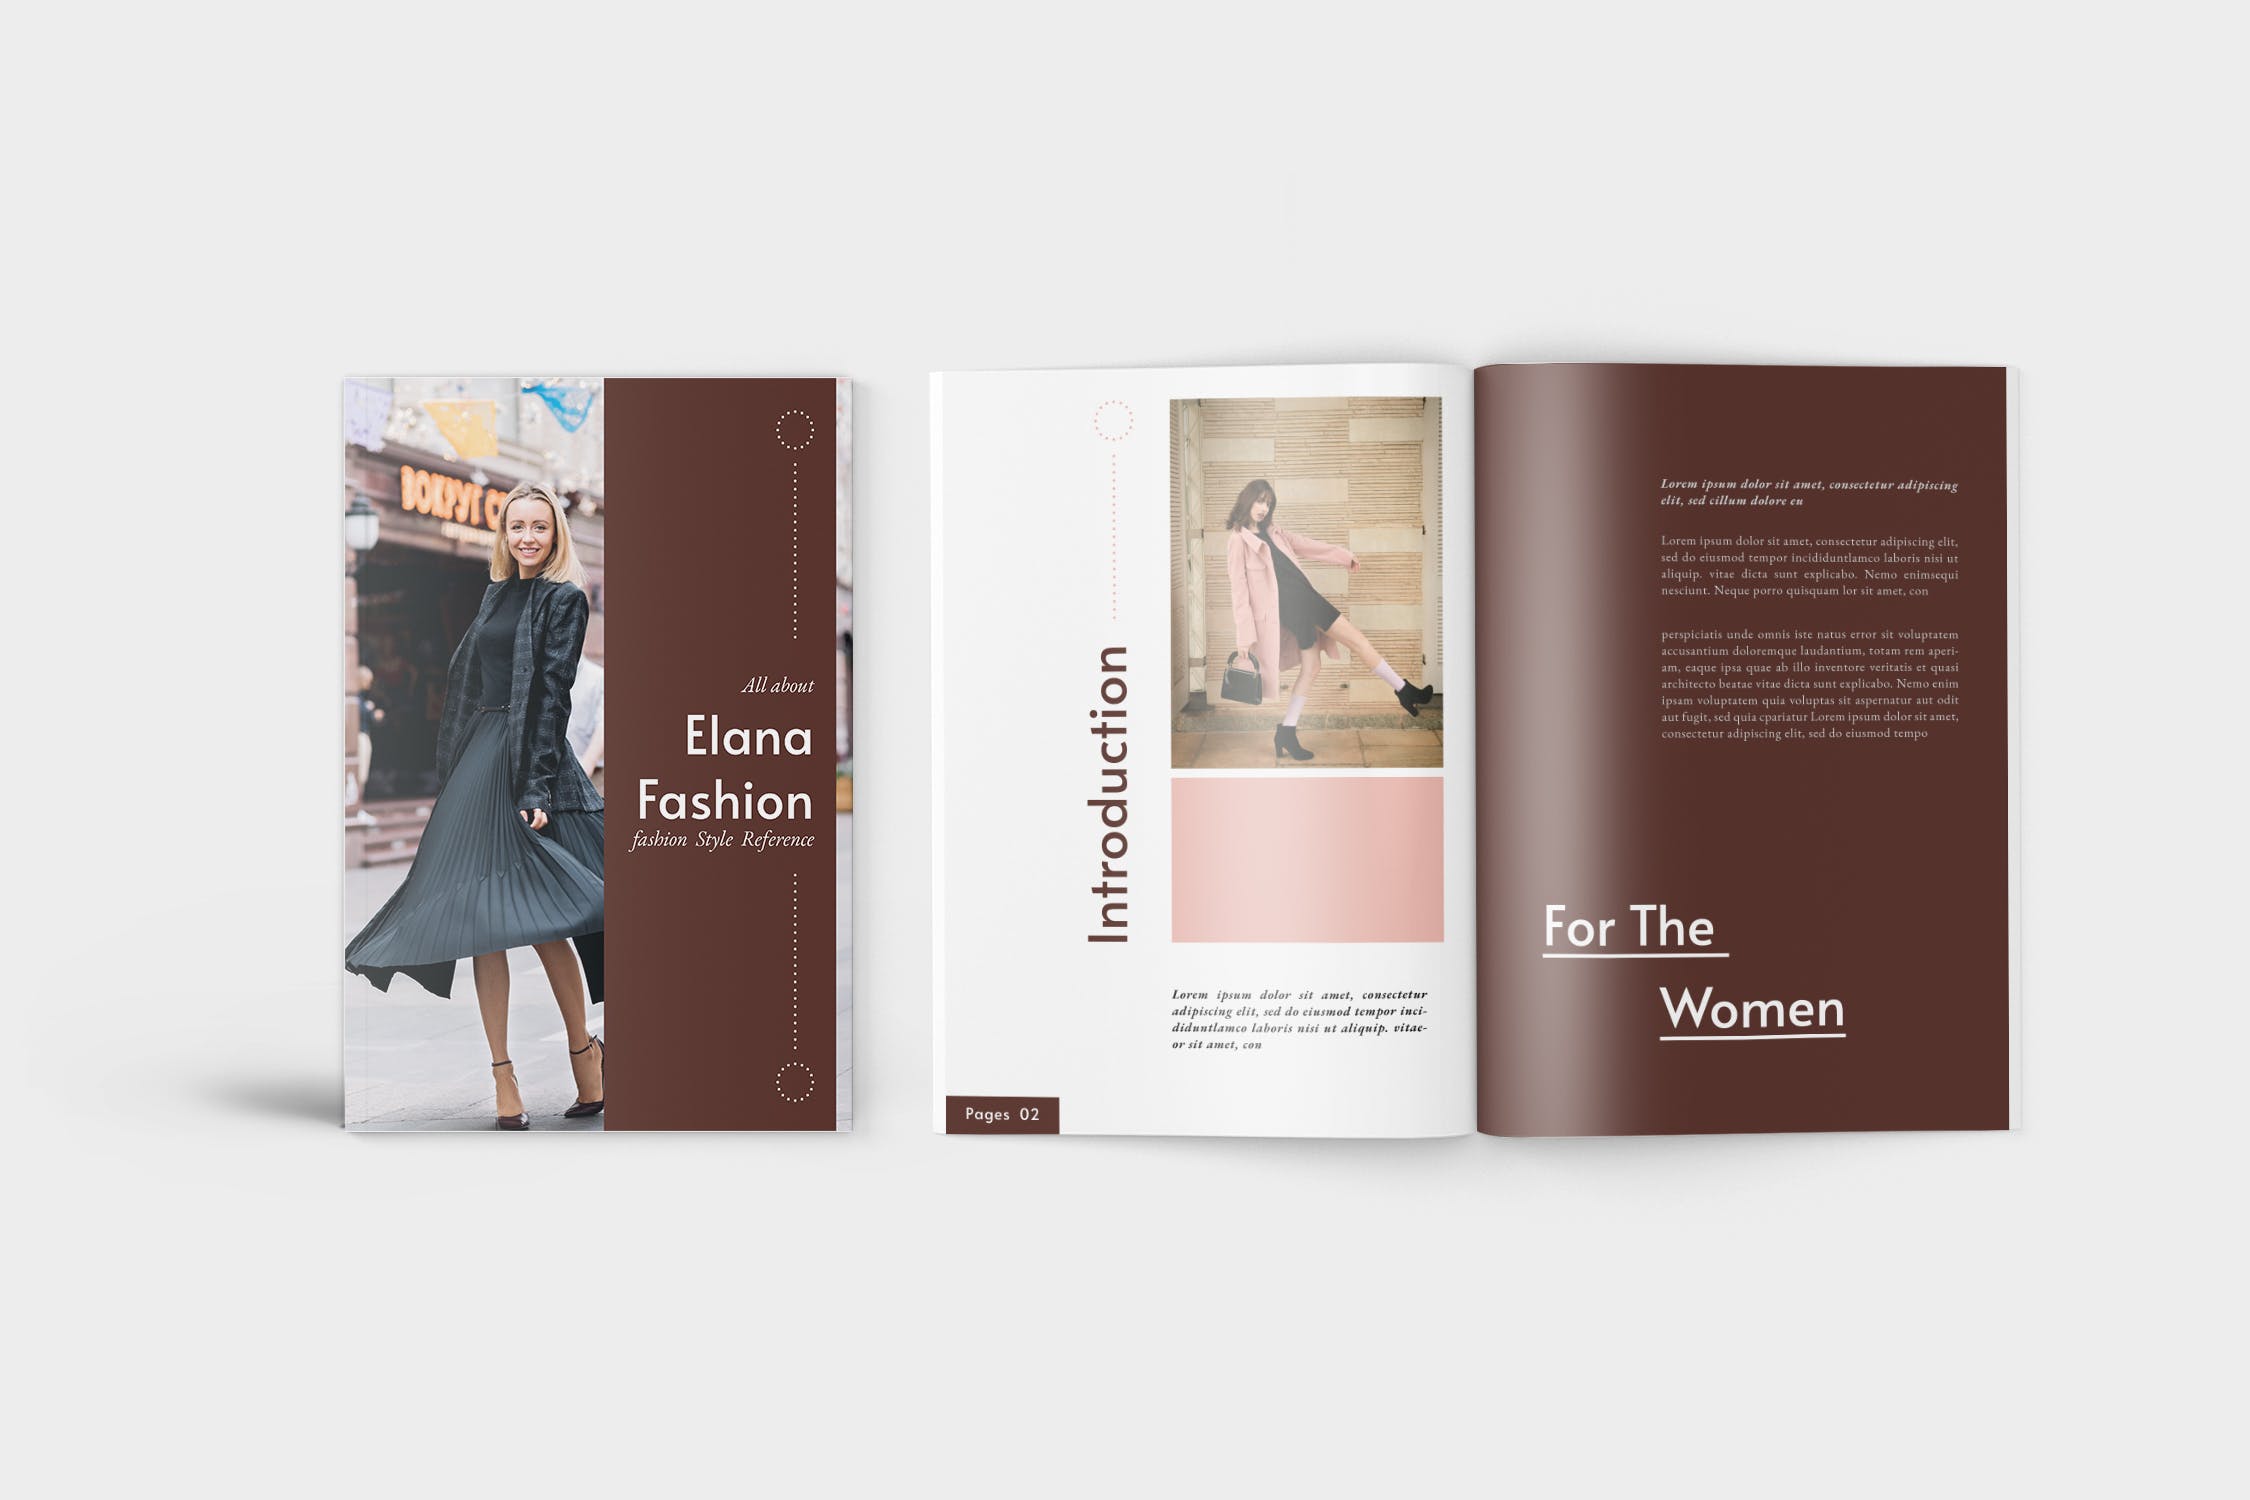 时装产品蚂蚁素材精选目录设计模板 Elana Fashion Lookbook Catalogue插图